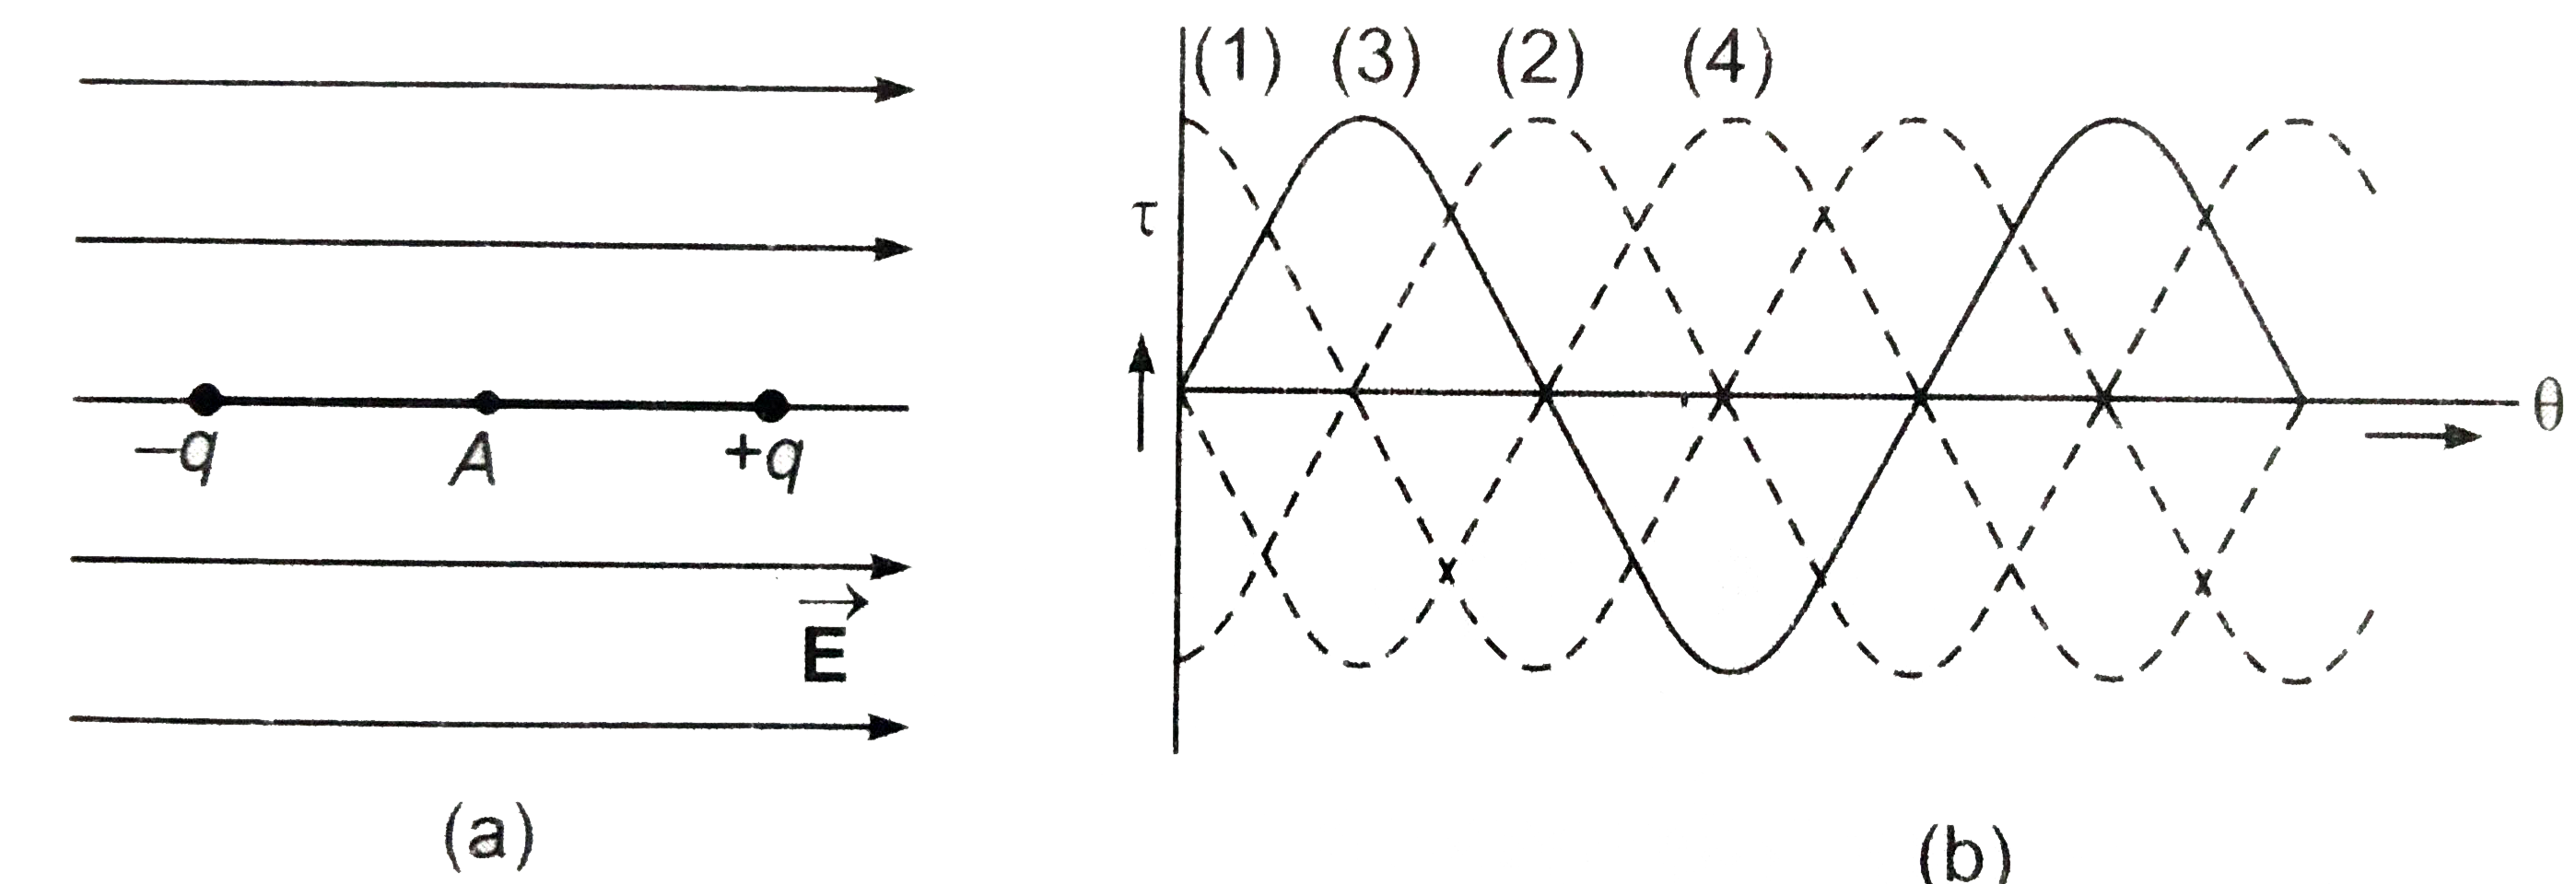 एक वैधुत द्विध्रुव क्षेत्र vecE में स्थित है तथा द्विध्रुव व् क्षेत्र दोनों कागज के तल में है [चित्र]। द्विध्रुव को बिंदु A पर कागज के तल के लम्बवत अक्ष के परित: वामावर्त घुमाया जाता है। यदी घूर्ण कोण theta वैधुत क्षेत्र की दिशा से नापा जाए, जो द्विध्रुव पर लगने वाला बल आघूर्ण (tau) व् घूर्ण कोण theta के बीच सम्बंन्ध प्रदर्शि होगा [चित्र] -